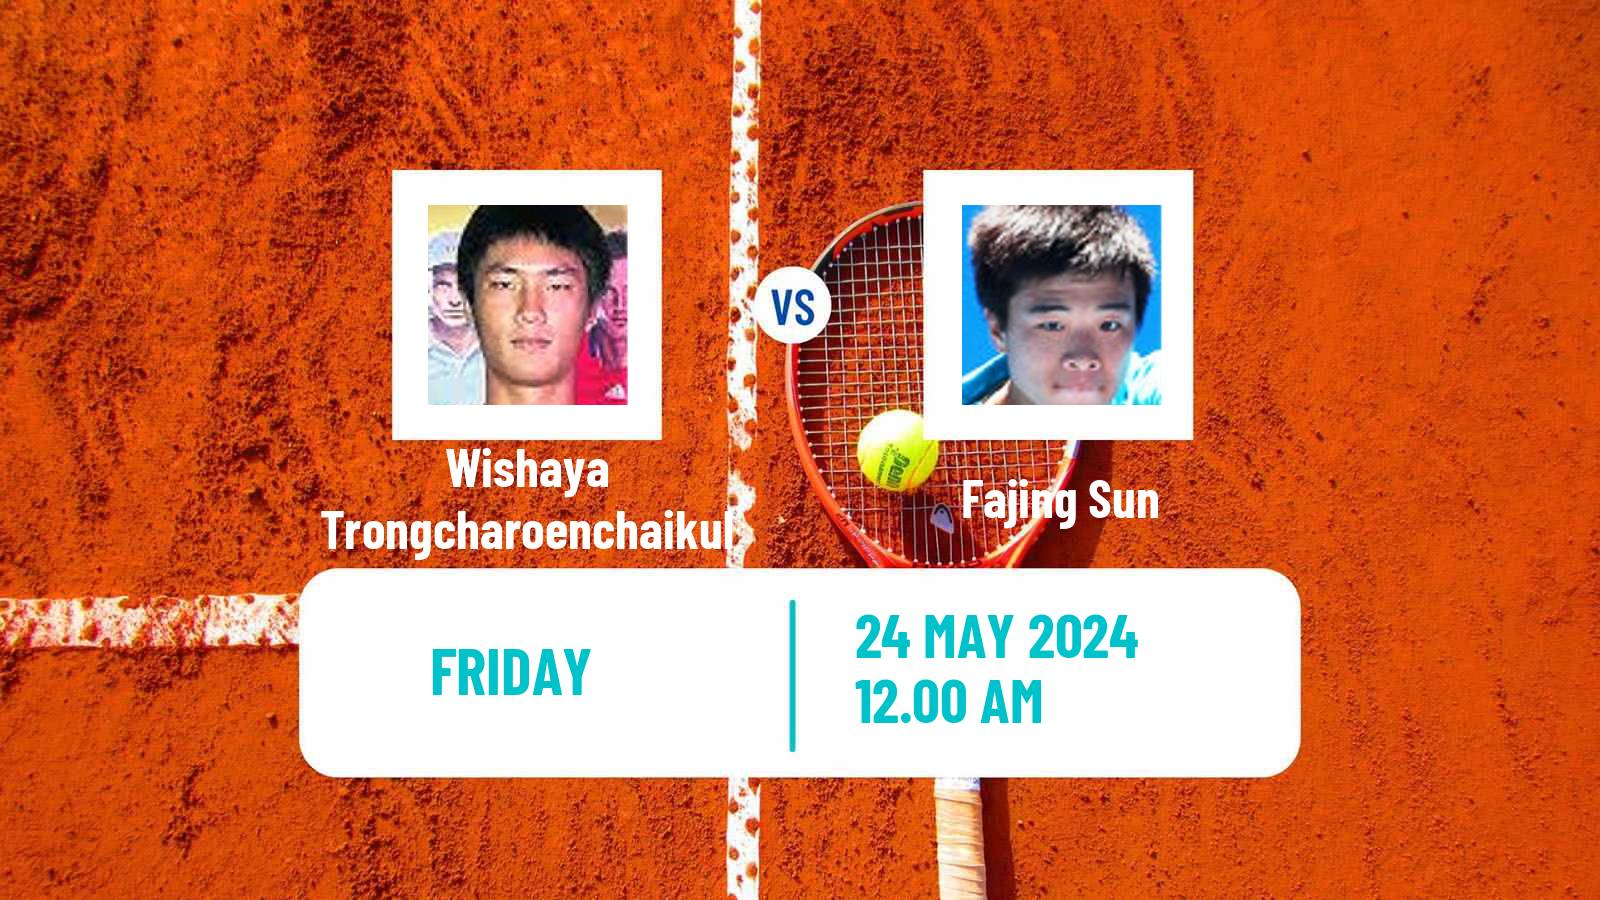 Tennis ITF M25 Anning Men Wishaya Trongcharoenchaikul - Fajing Sun